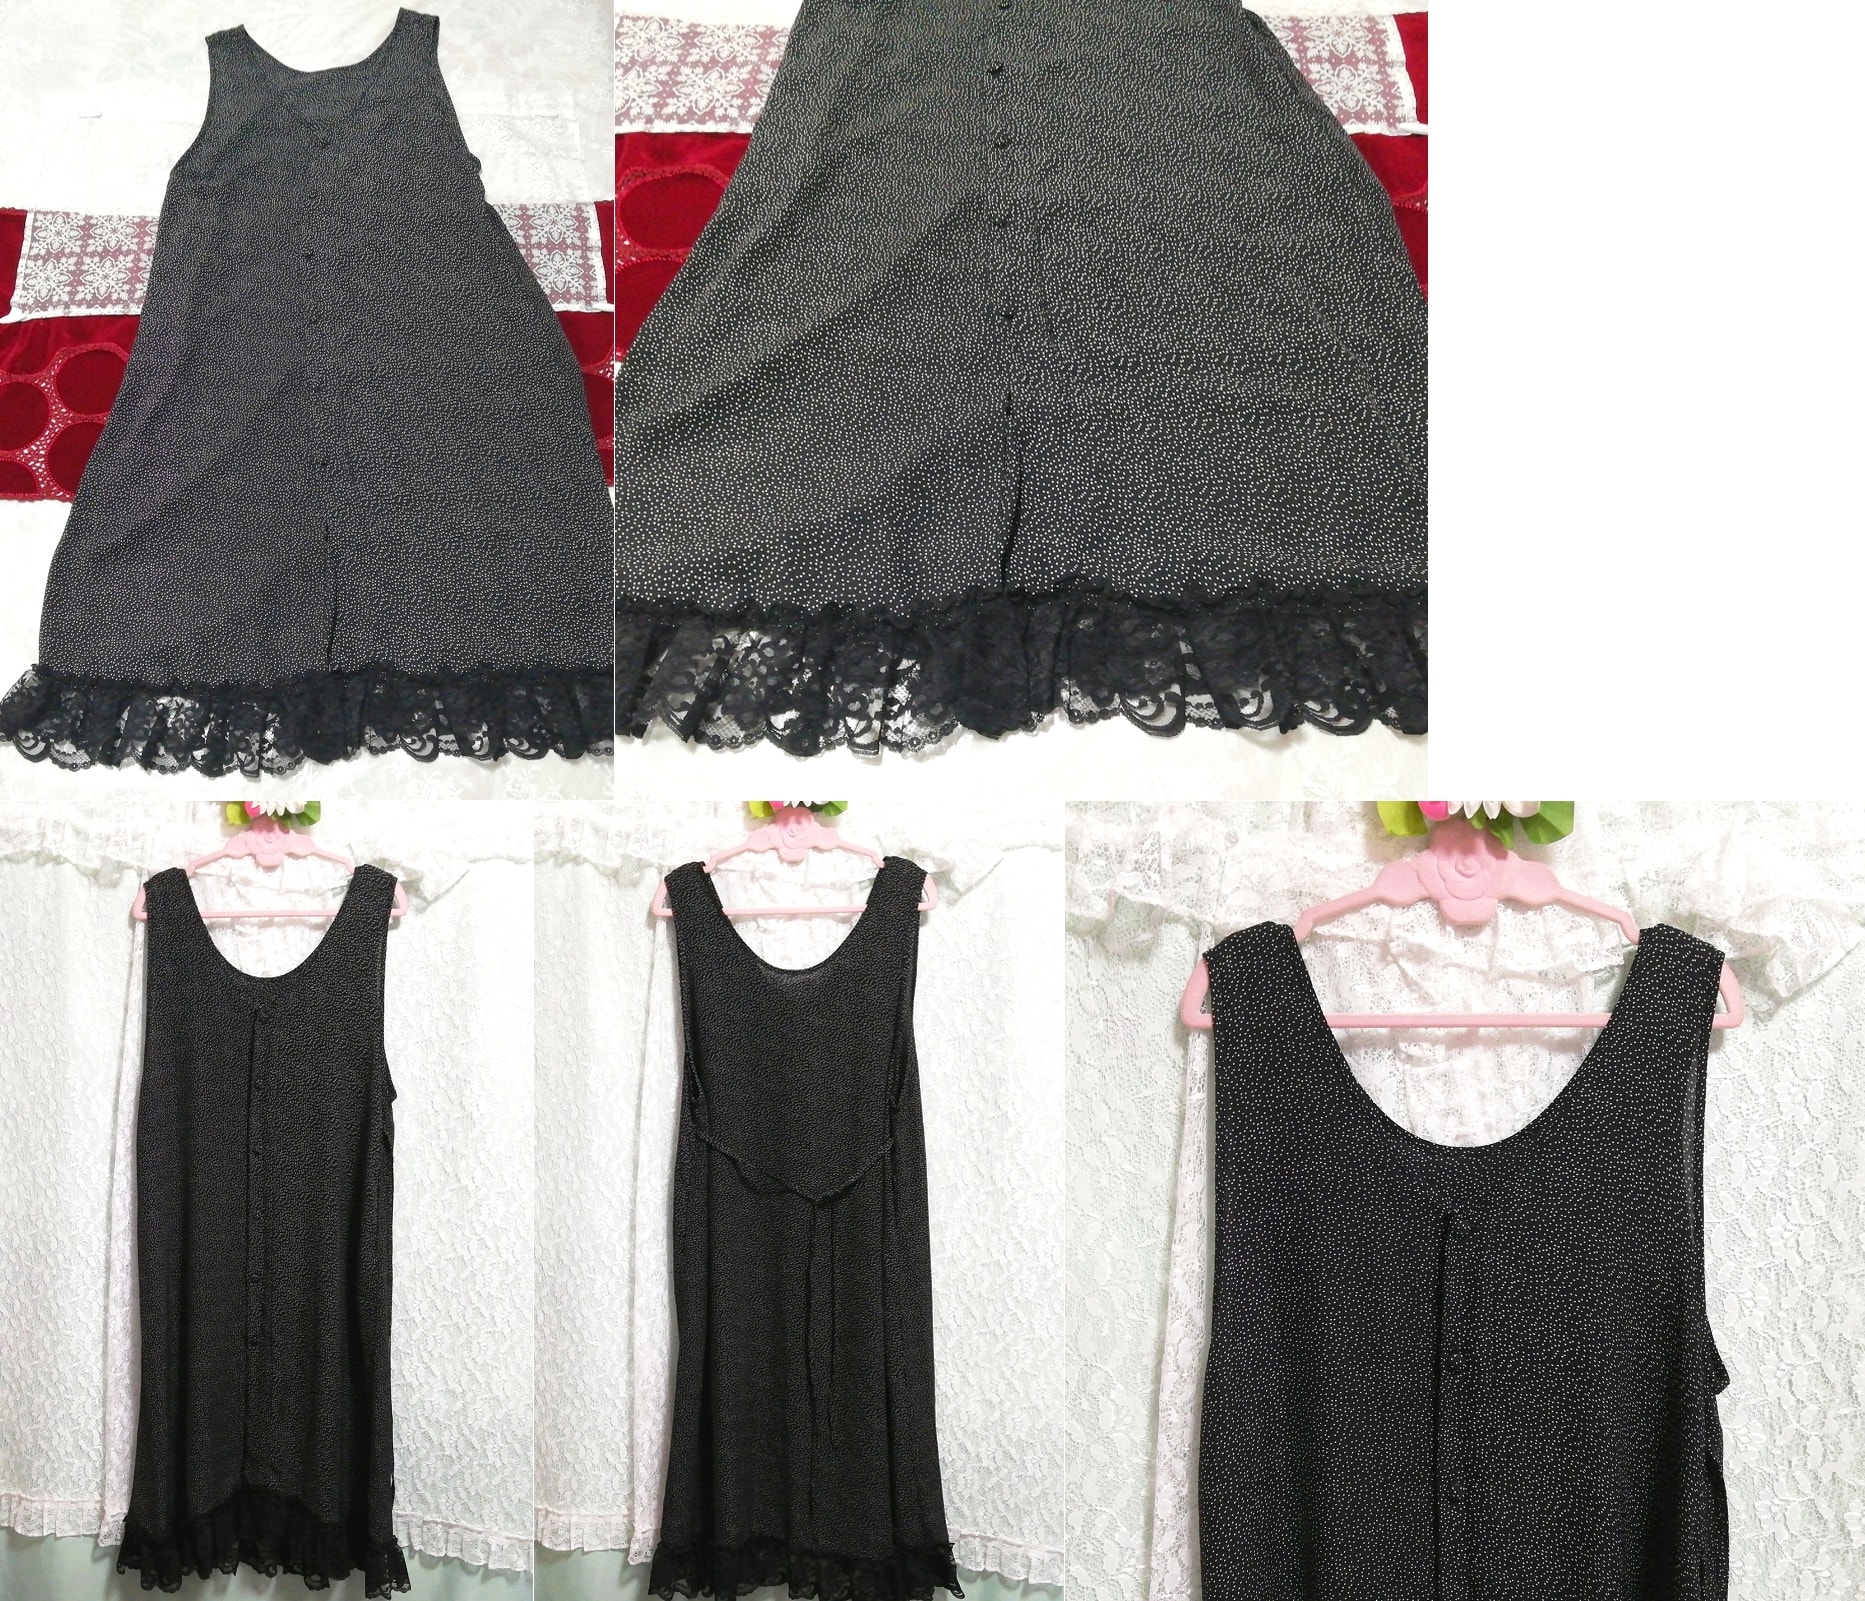 블랙 앤 화이트 폴카 도트 시폰 민소매 네글리제 나이트가운 나이트웨어 맥시 드레스, 롱 스커트, m 사이즈